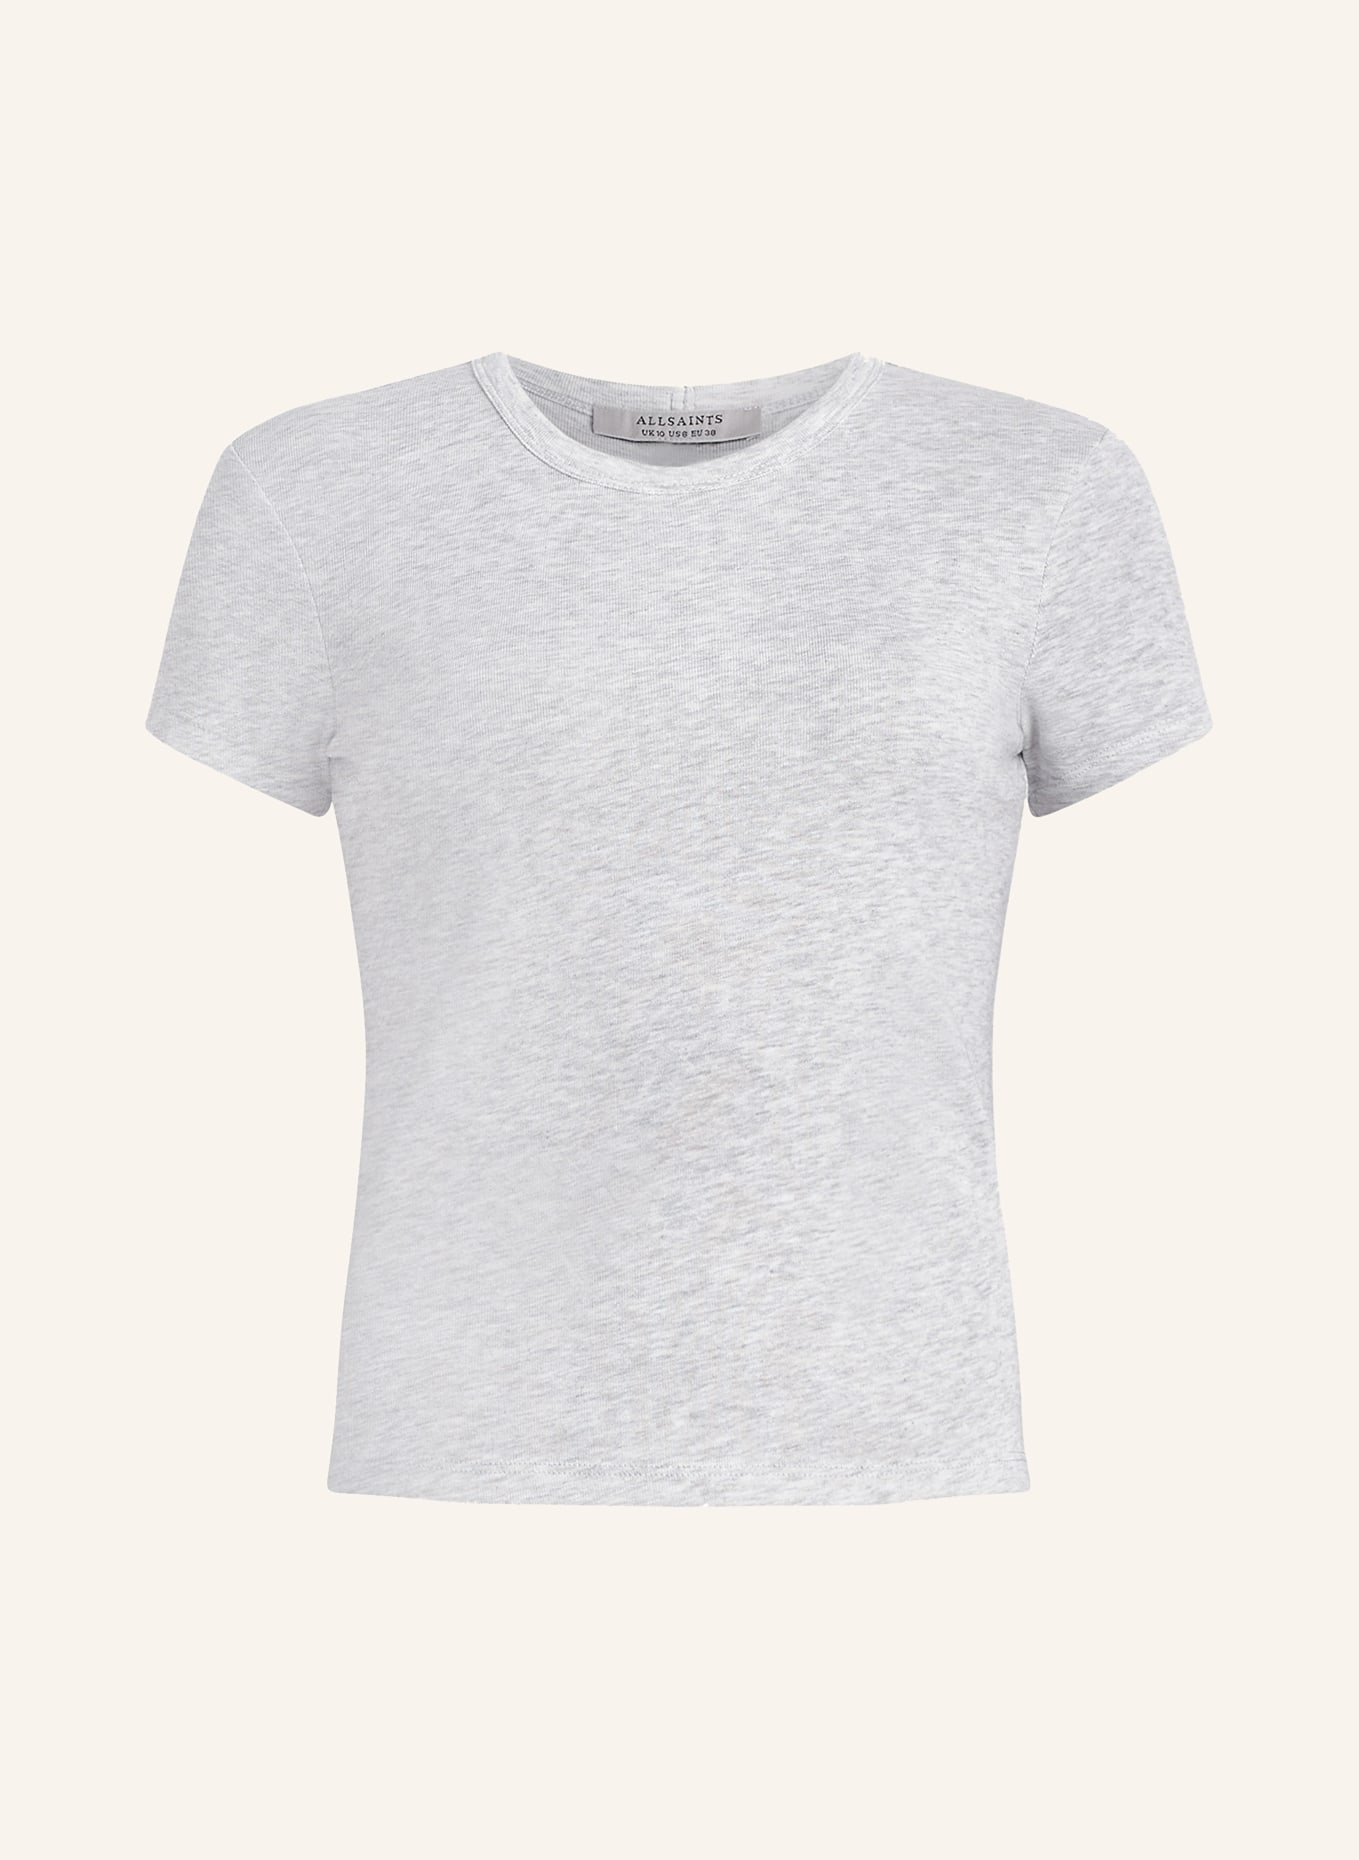 ALLSAINTS T-Shirt STEVIE, Farbe: GRAU (Bild 1)